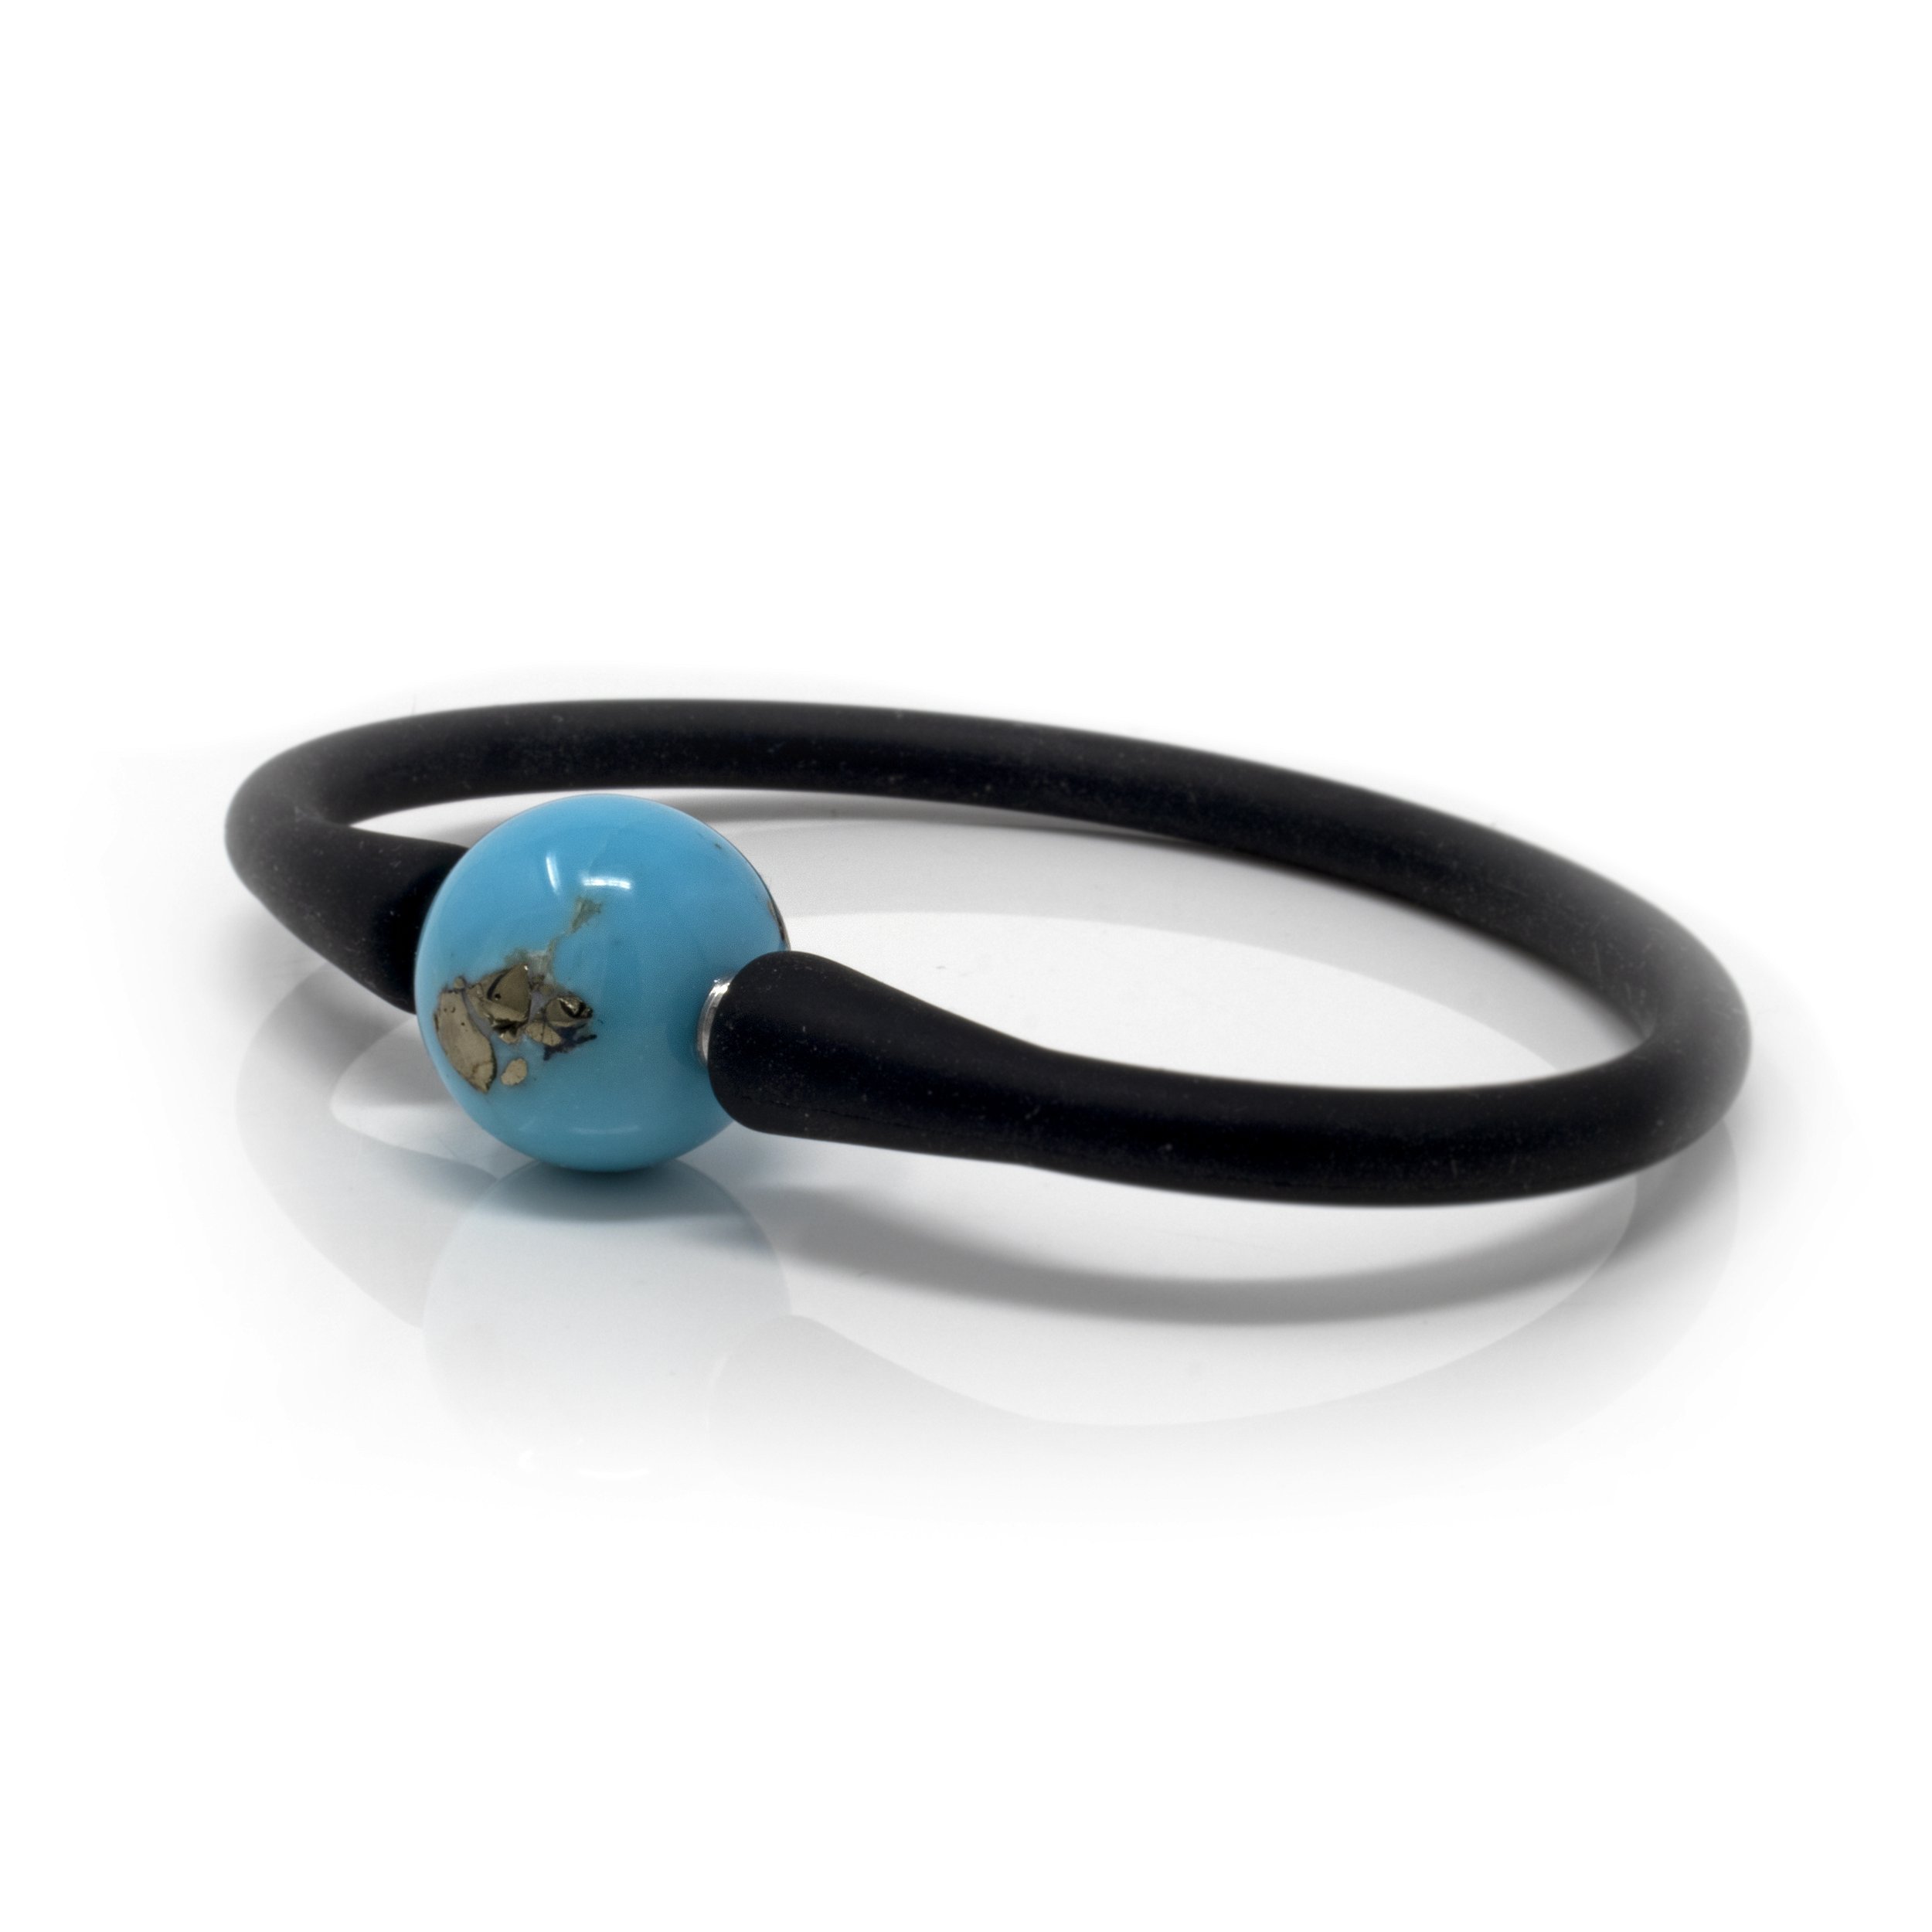 Turquoise Bracelet - Round Bead Set On Black Silicone Band